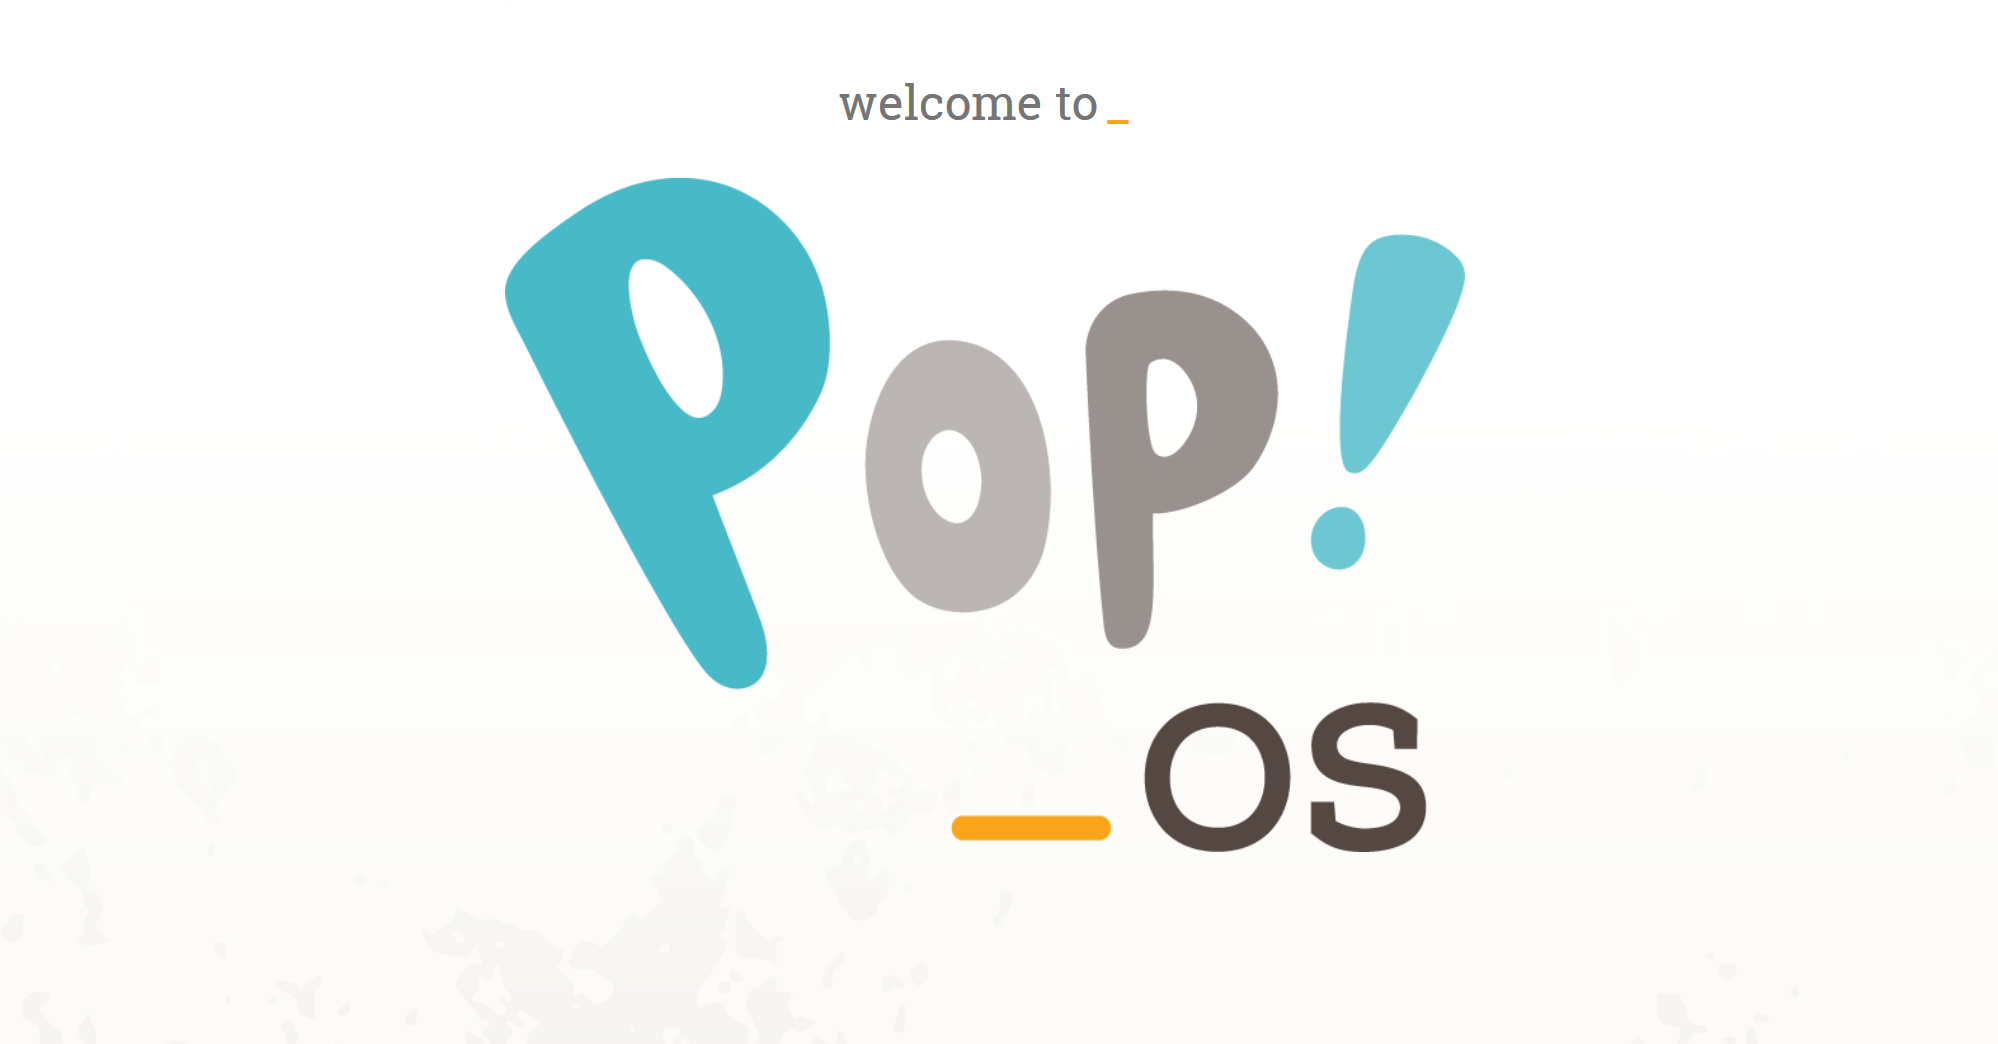 Pop!_OS 19.10